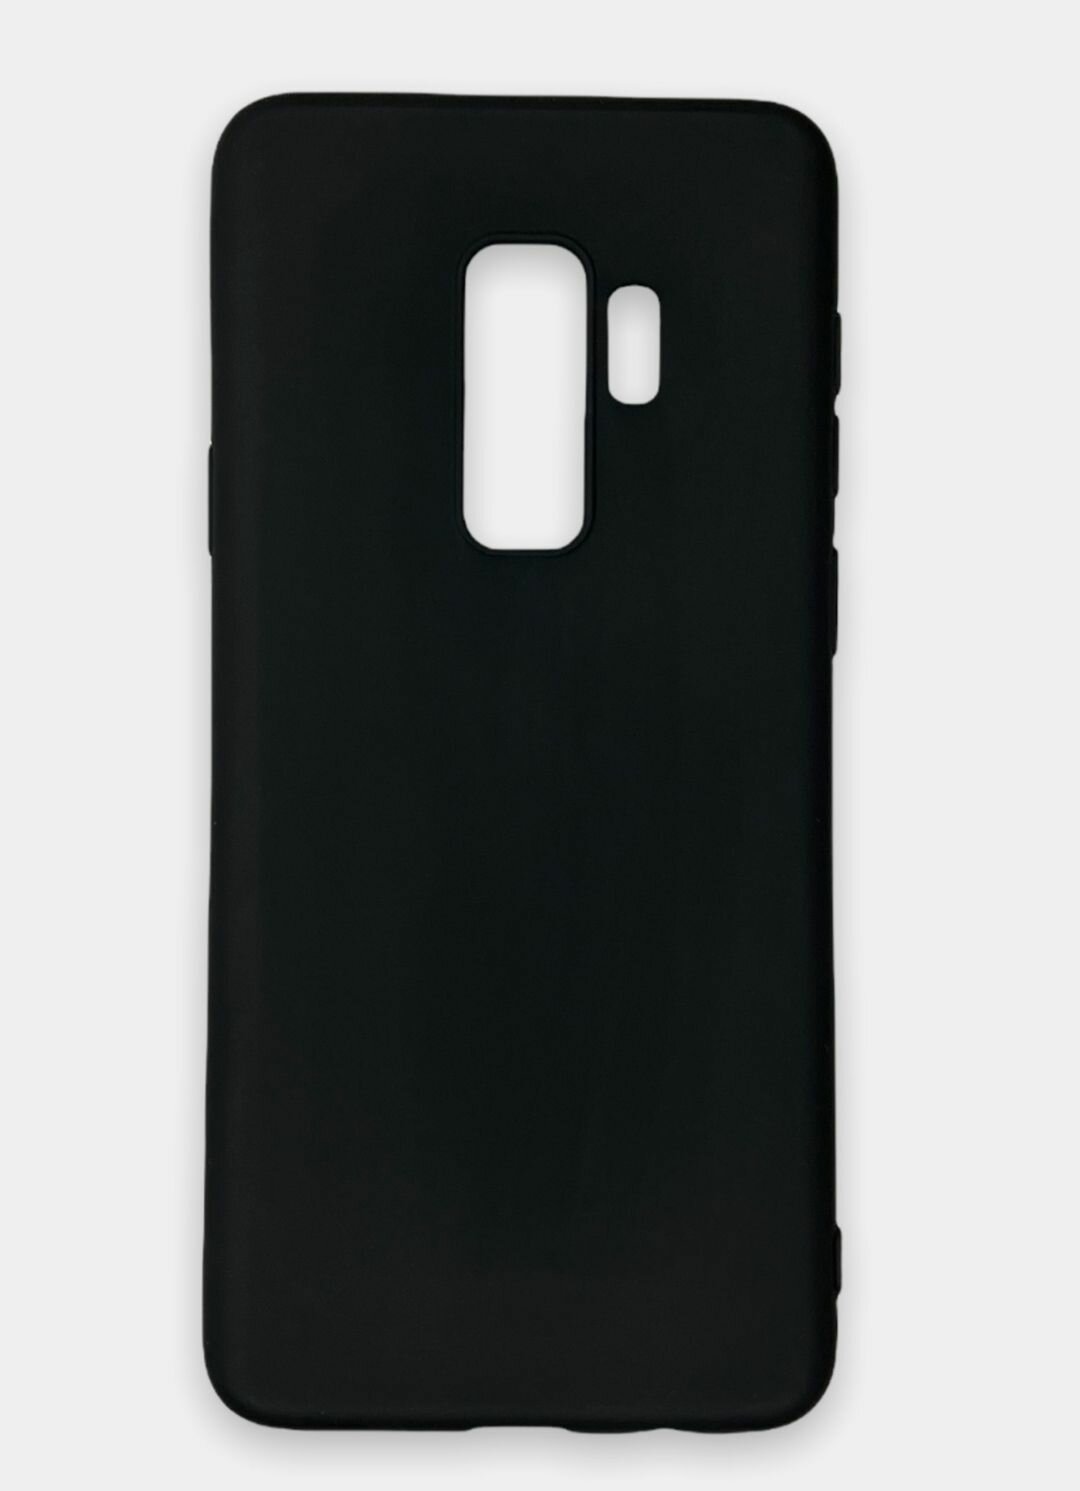 Samsung Galaxy S9 Plus / s9+ Силиконовый чёрный чехол, Самсунг галакси с9 плюс накладка бампер